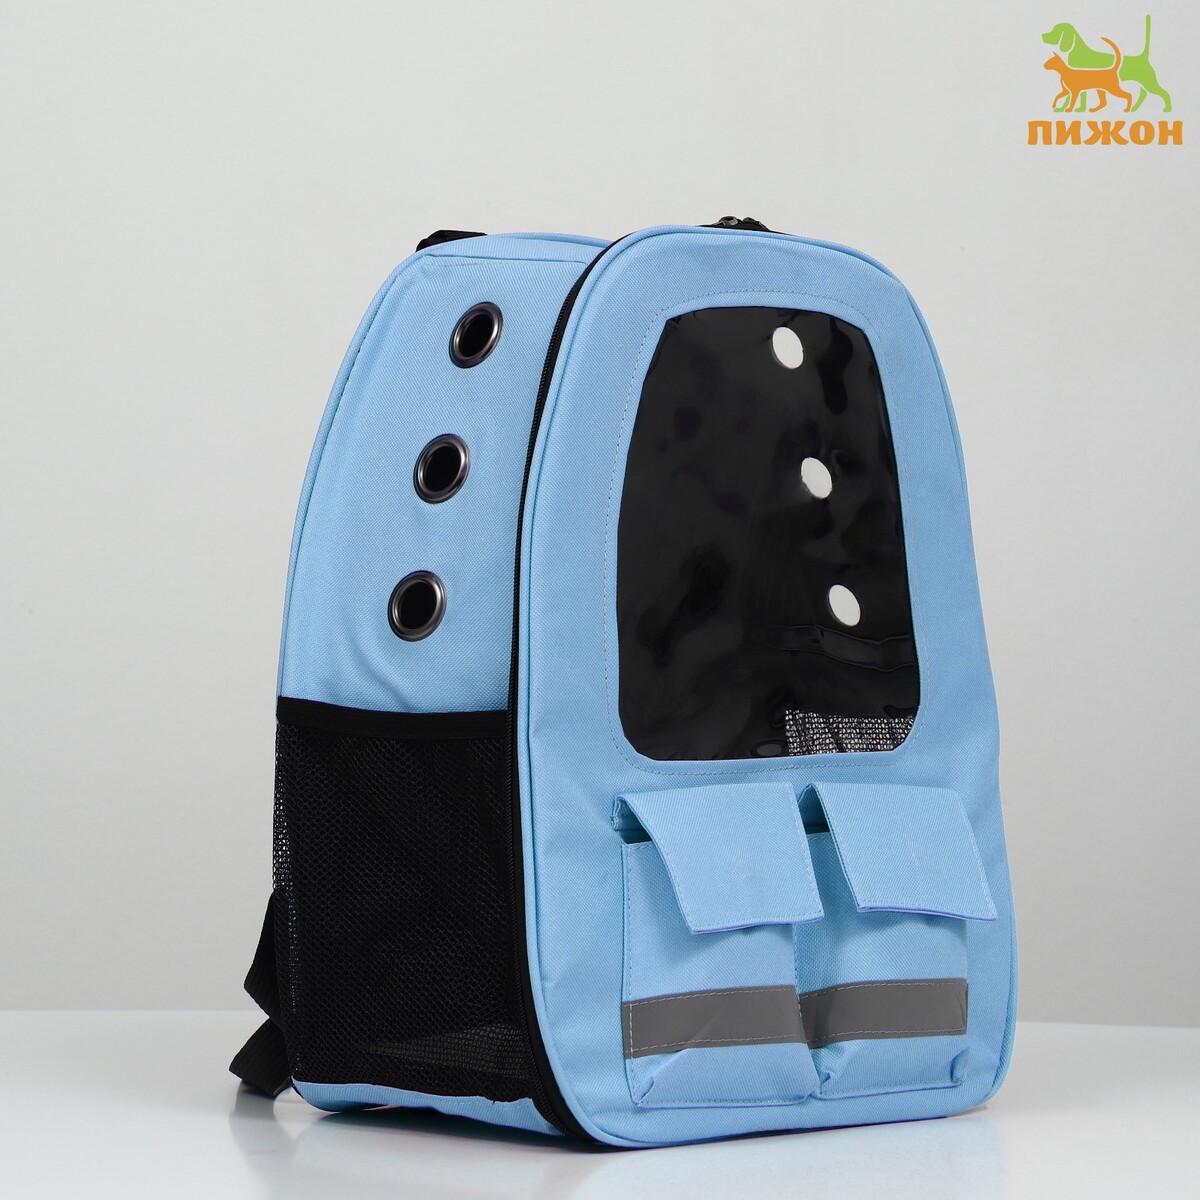 Рюкзак для переноски животных с окном для обзора, голубой конус с отверстиями 32 см голубой